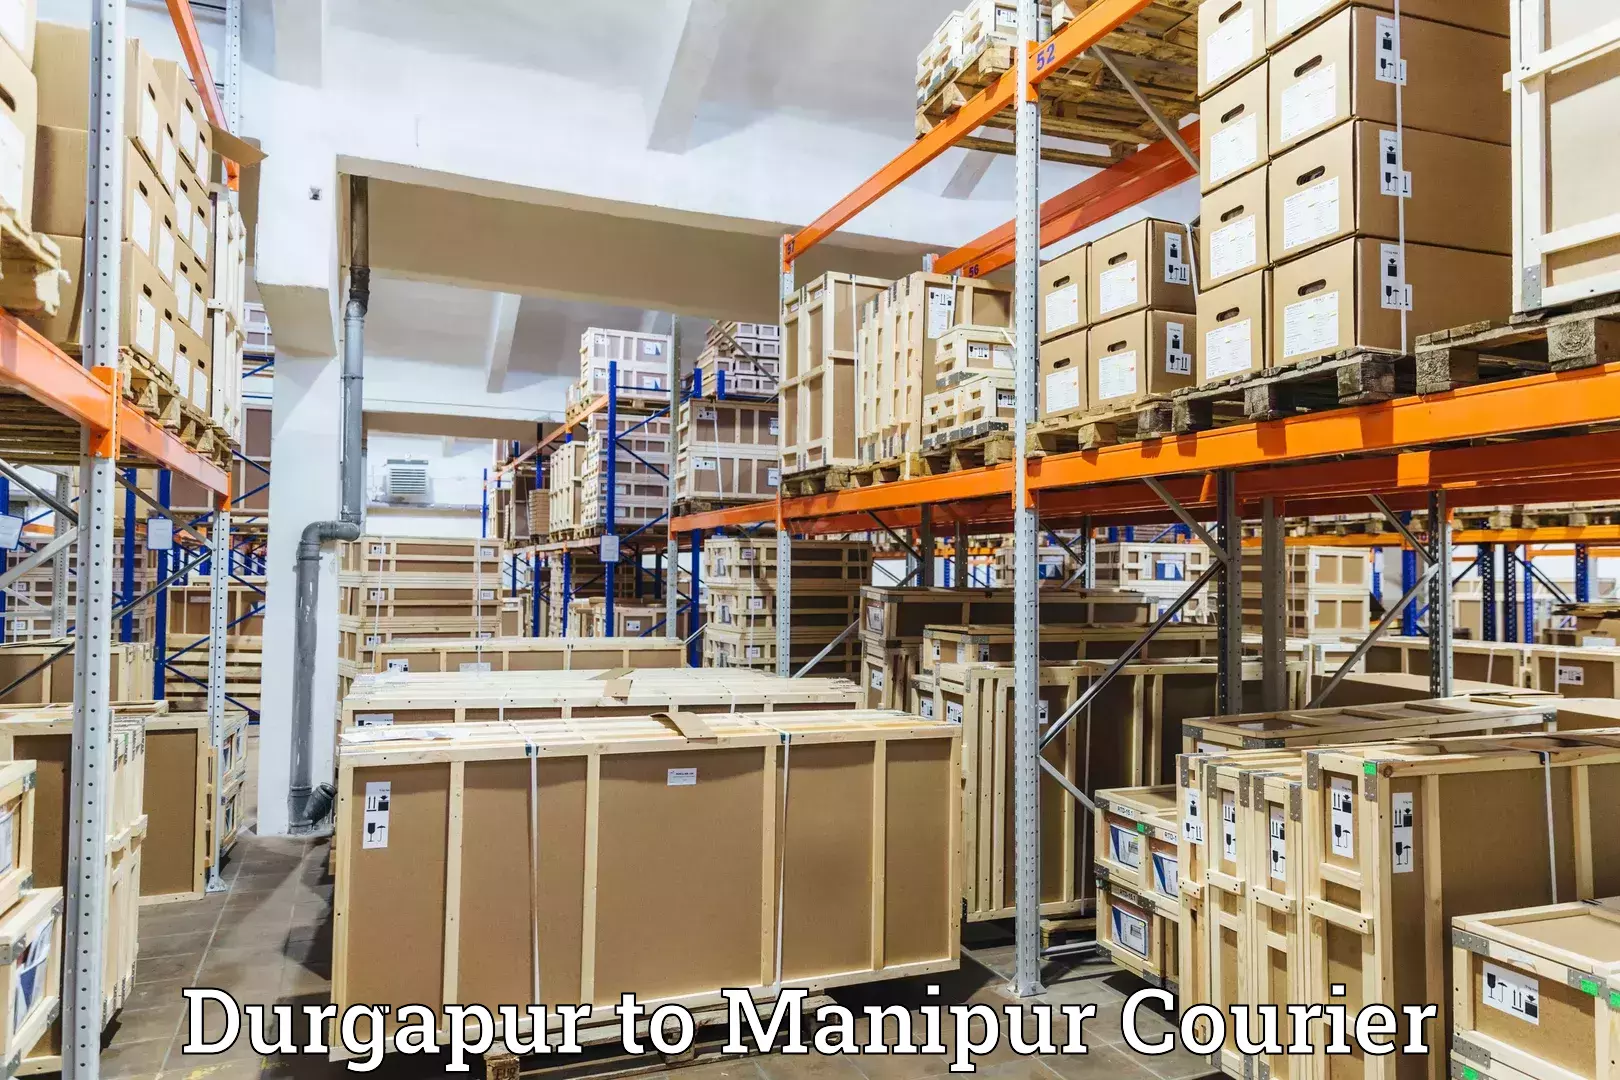 Urban courier service Durgapur to Manipur